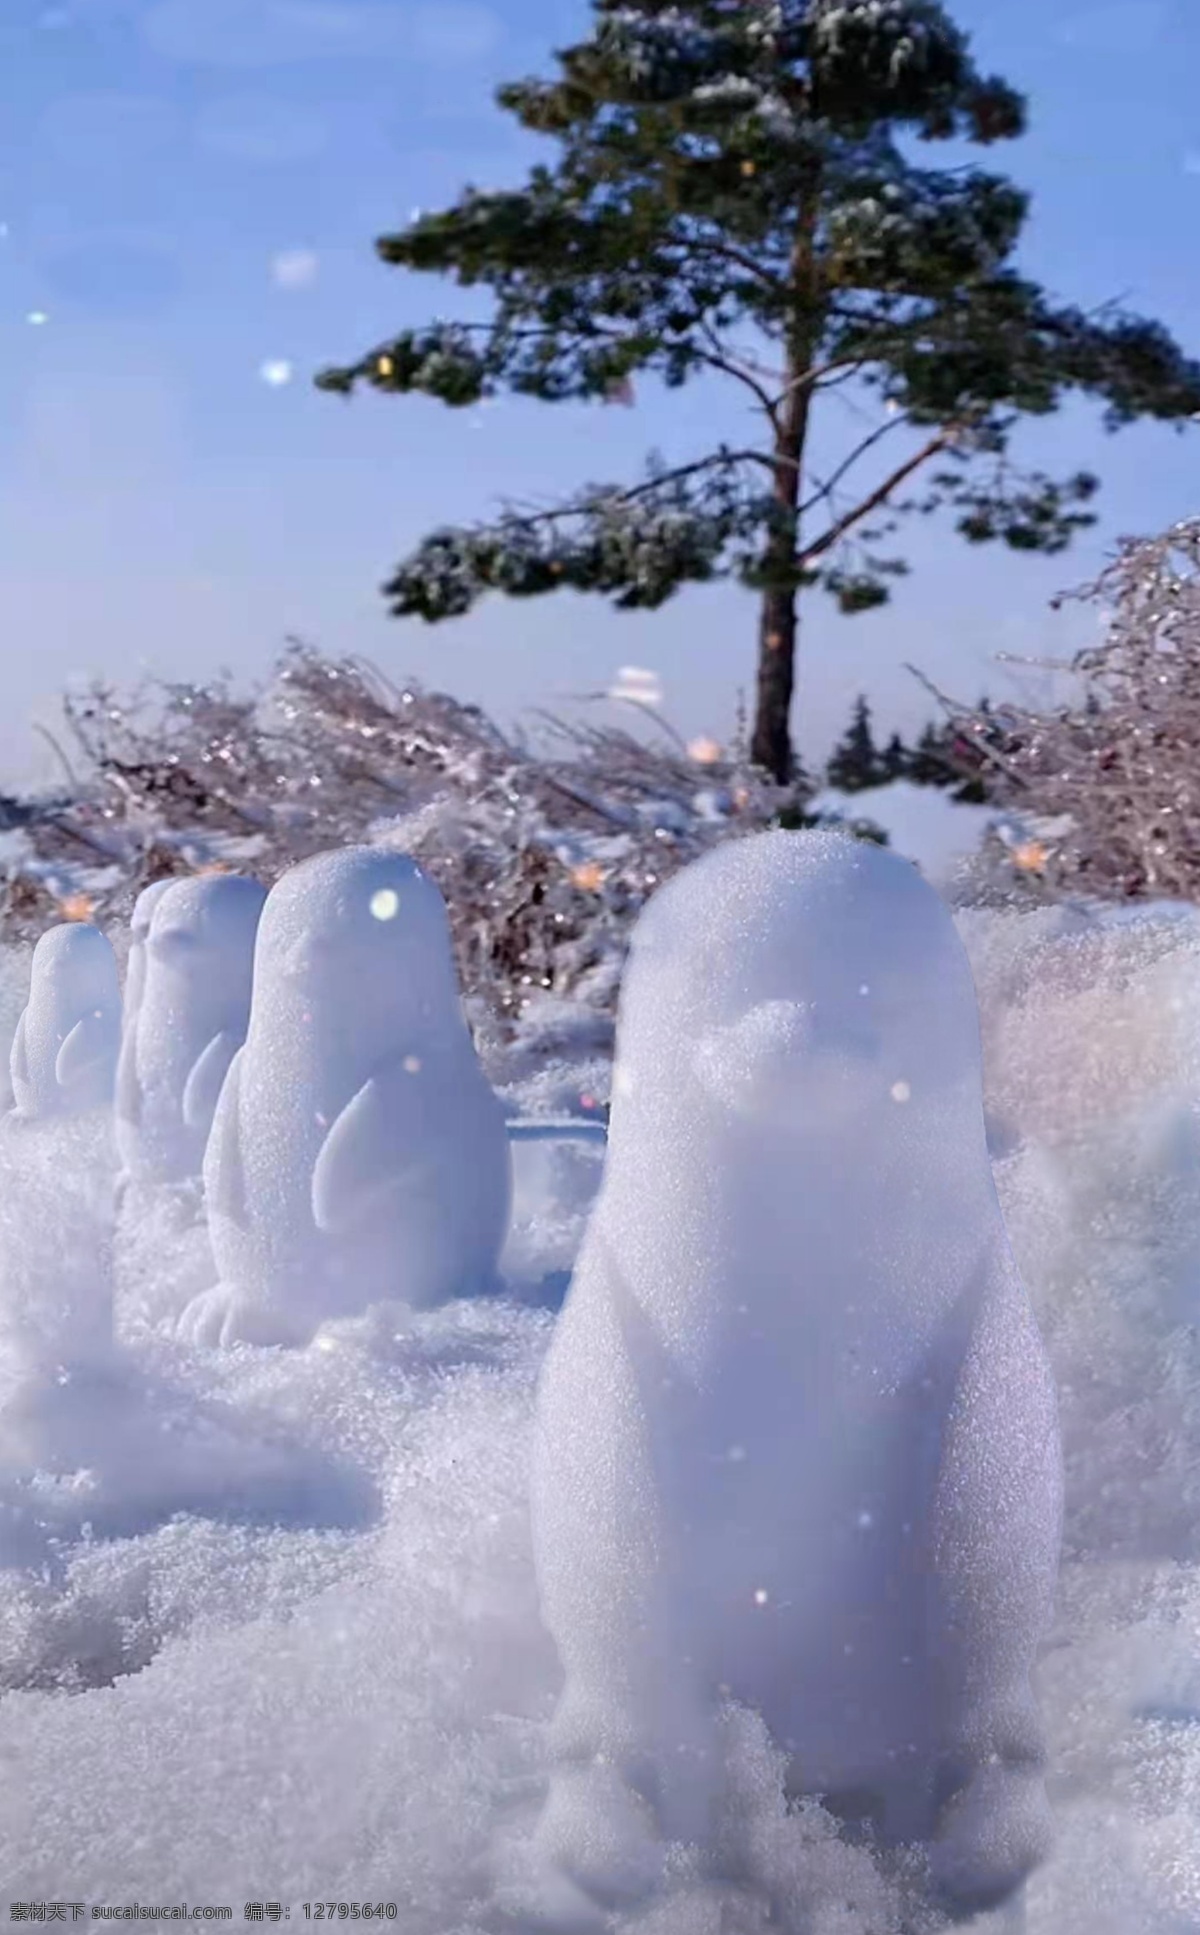 企鹅雪人图片 雪人 企鹅 漂亮 唯美 好看 雪